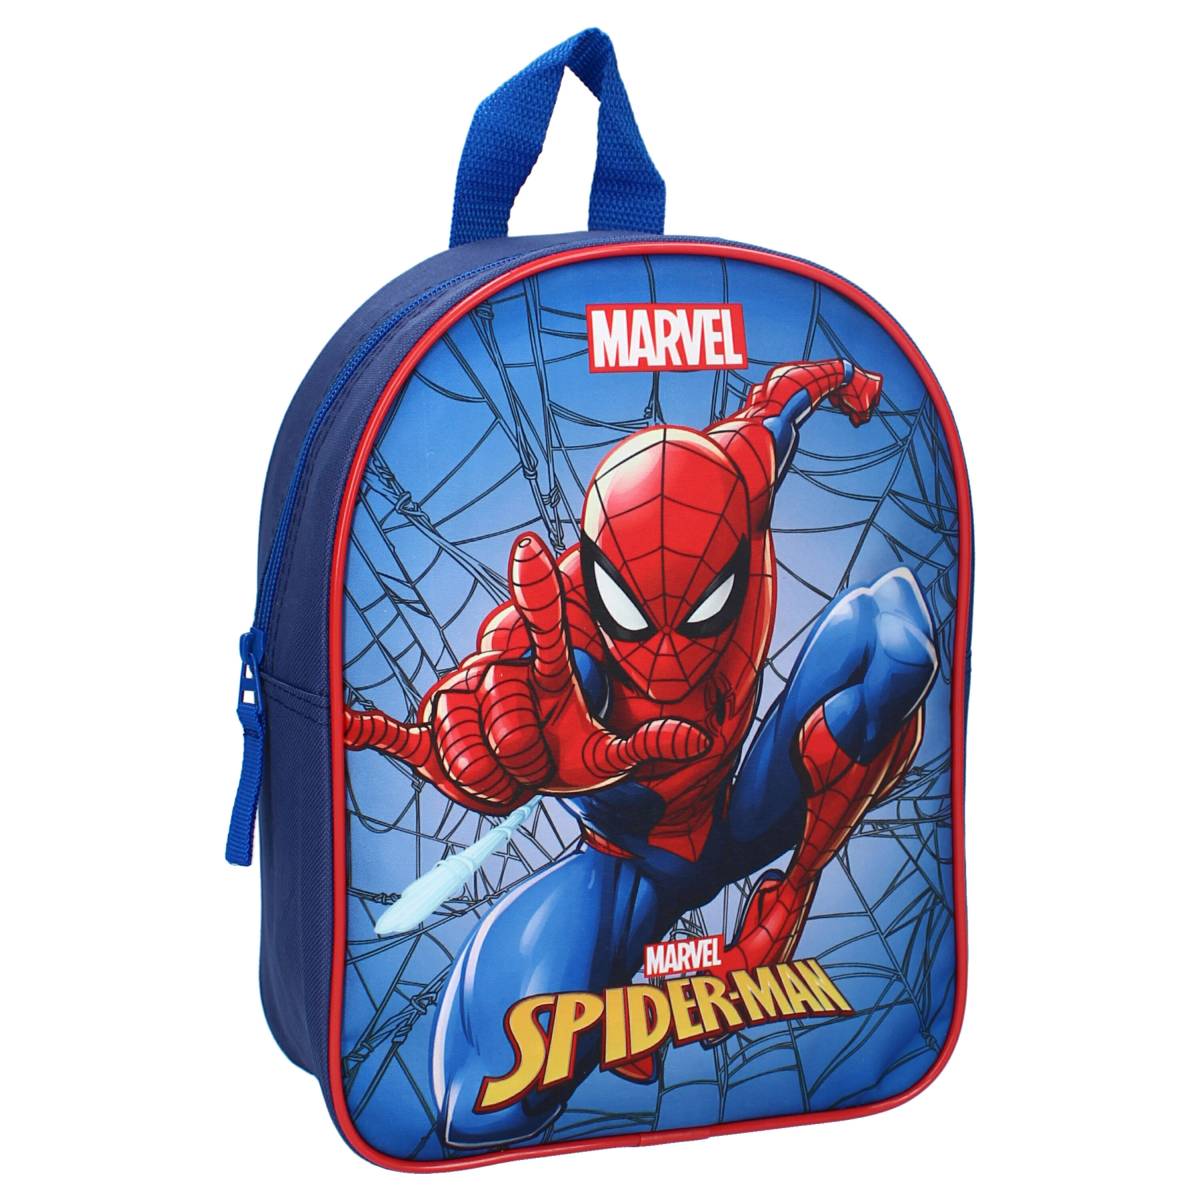 Spiderman Sac a dos Spiderman enfant ecole maternelle pas cher